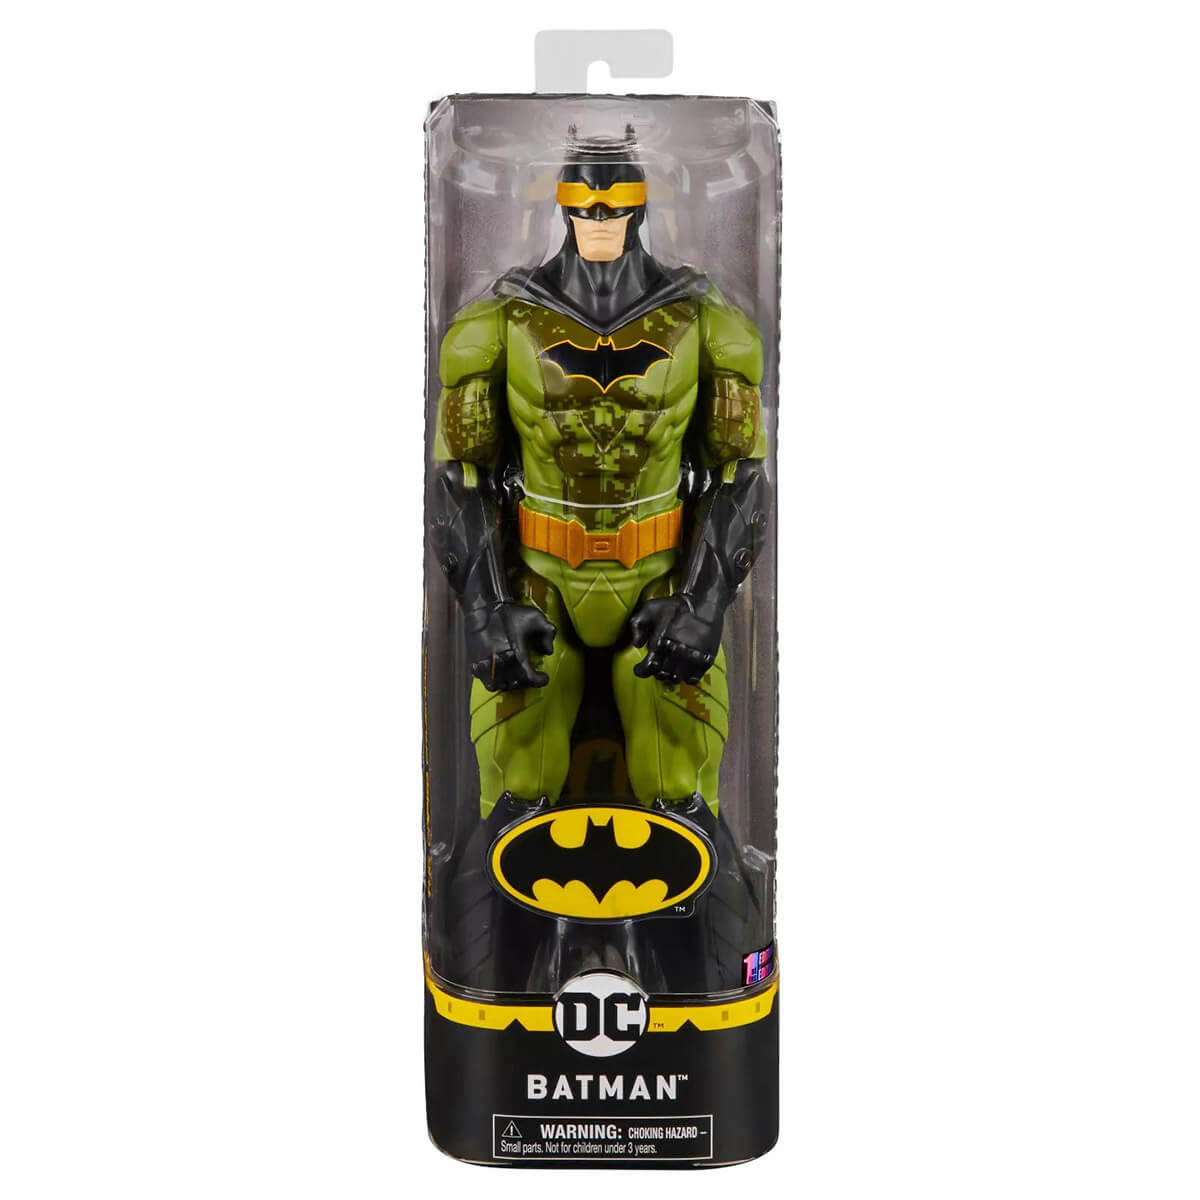 DC Creature Chaos Batman Camoflage Suit Action Figure